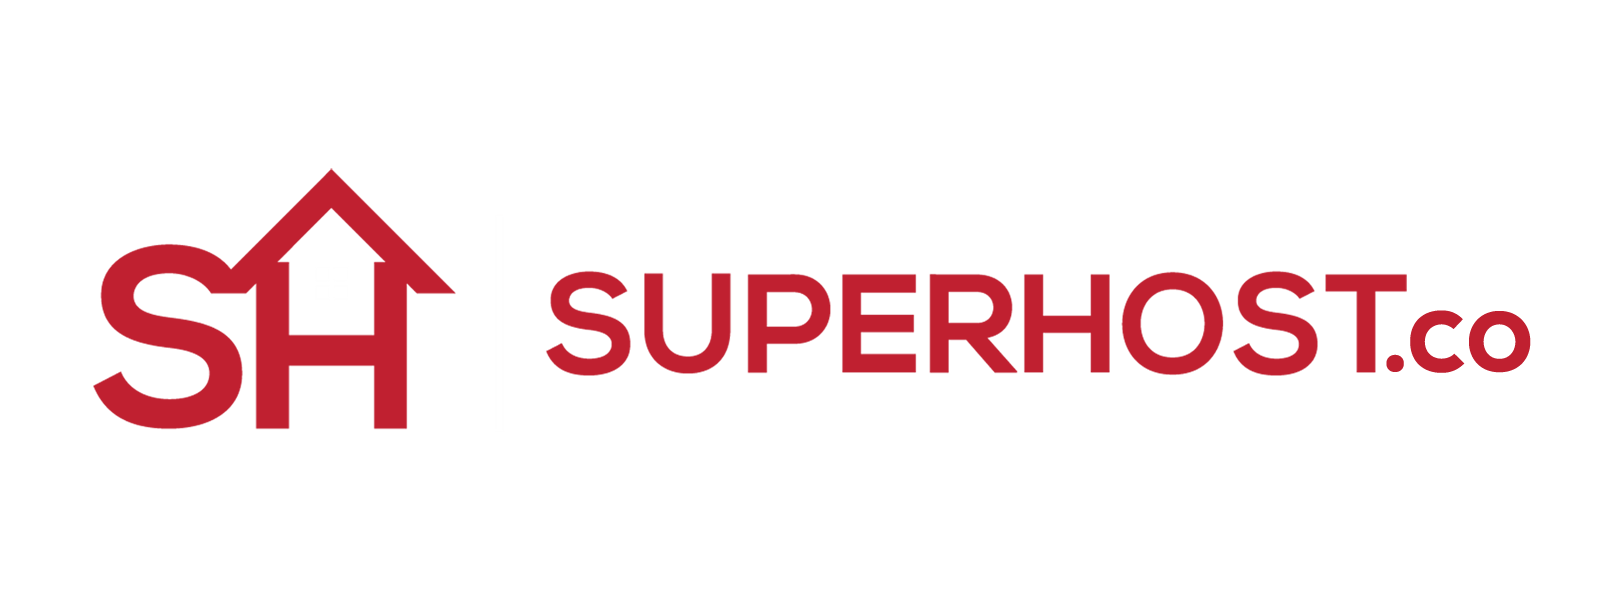 Superhost-762f42d2